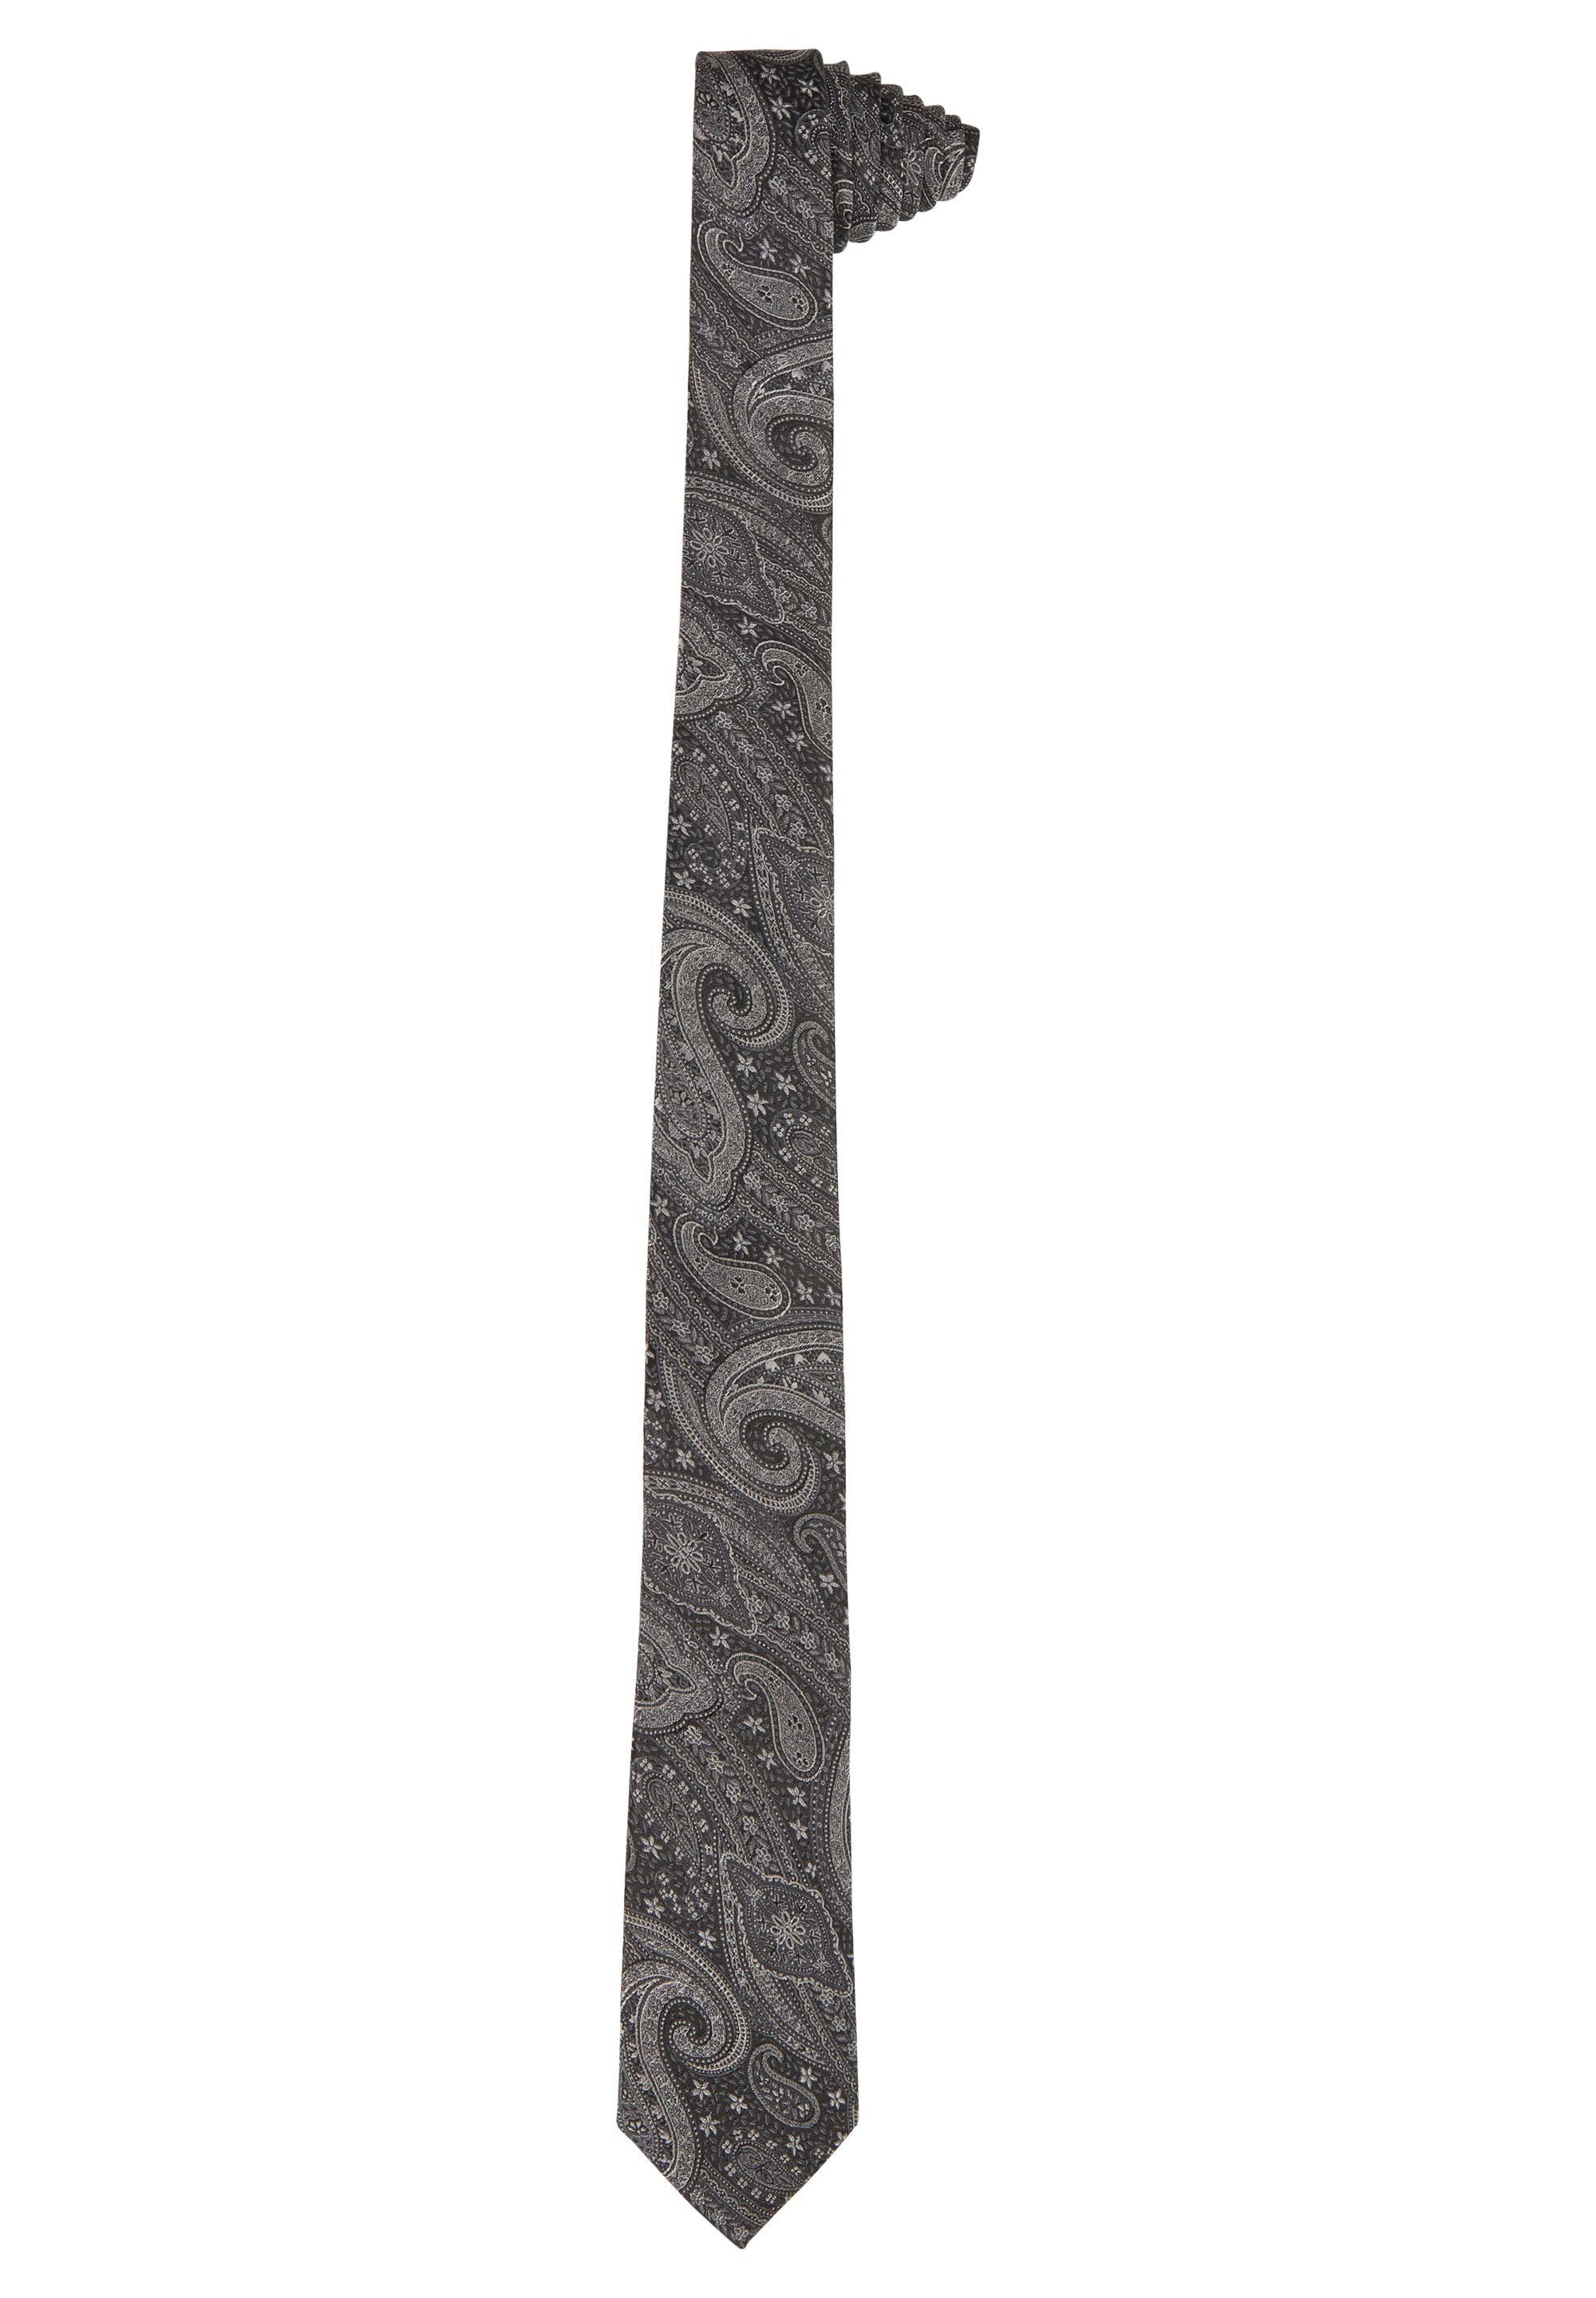 HECHTER PARIS Krawatte mit Paisley-Muster graphite | Breite Krawatten